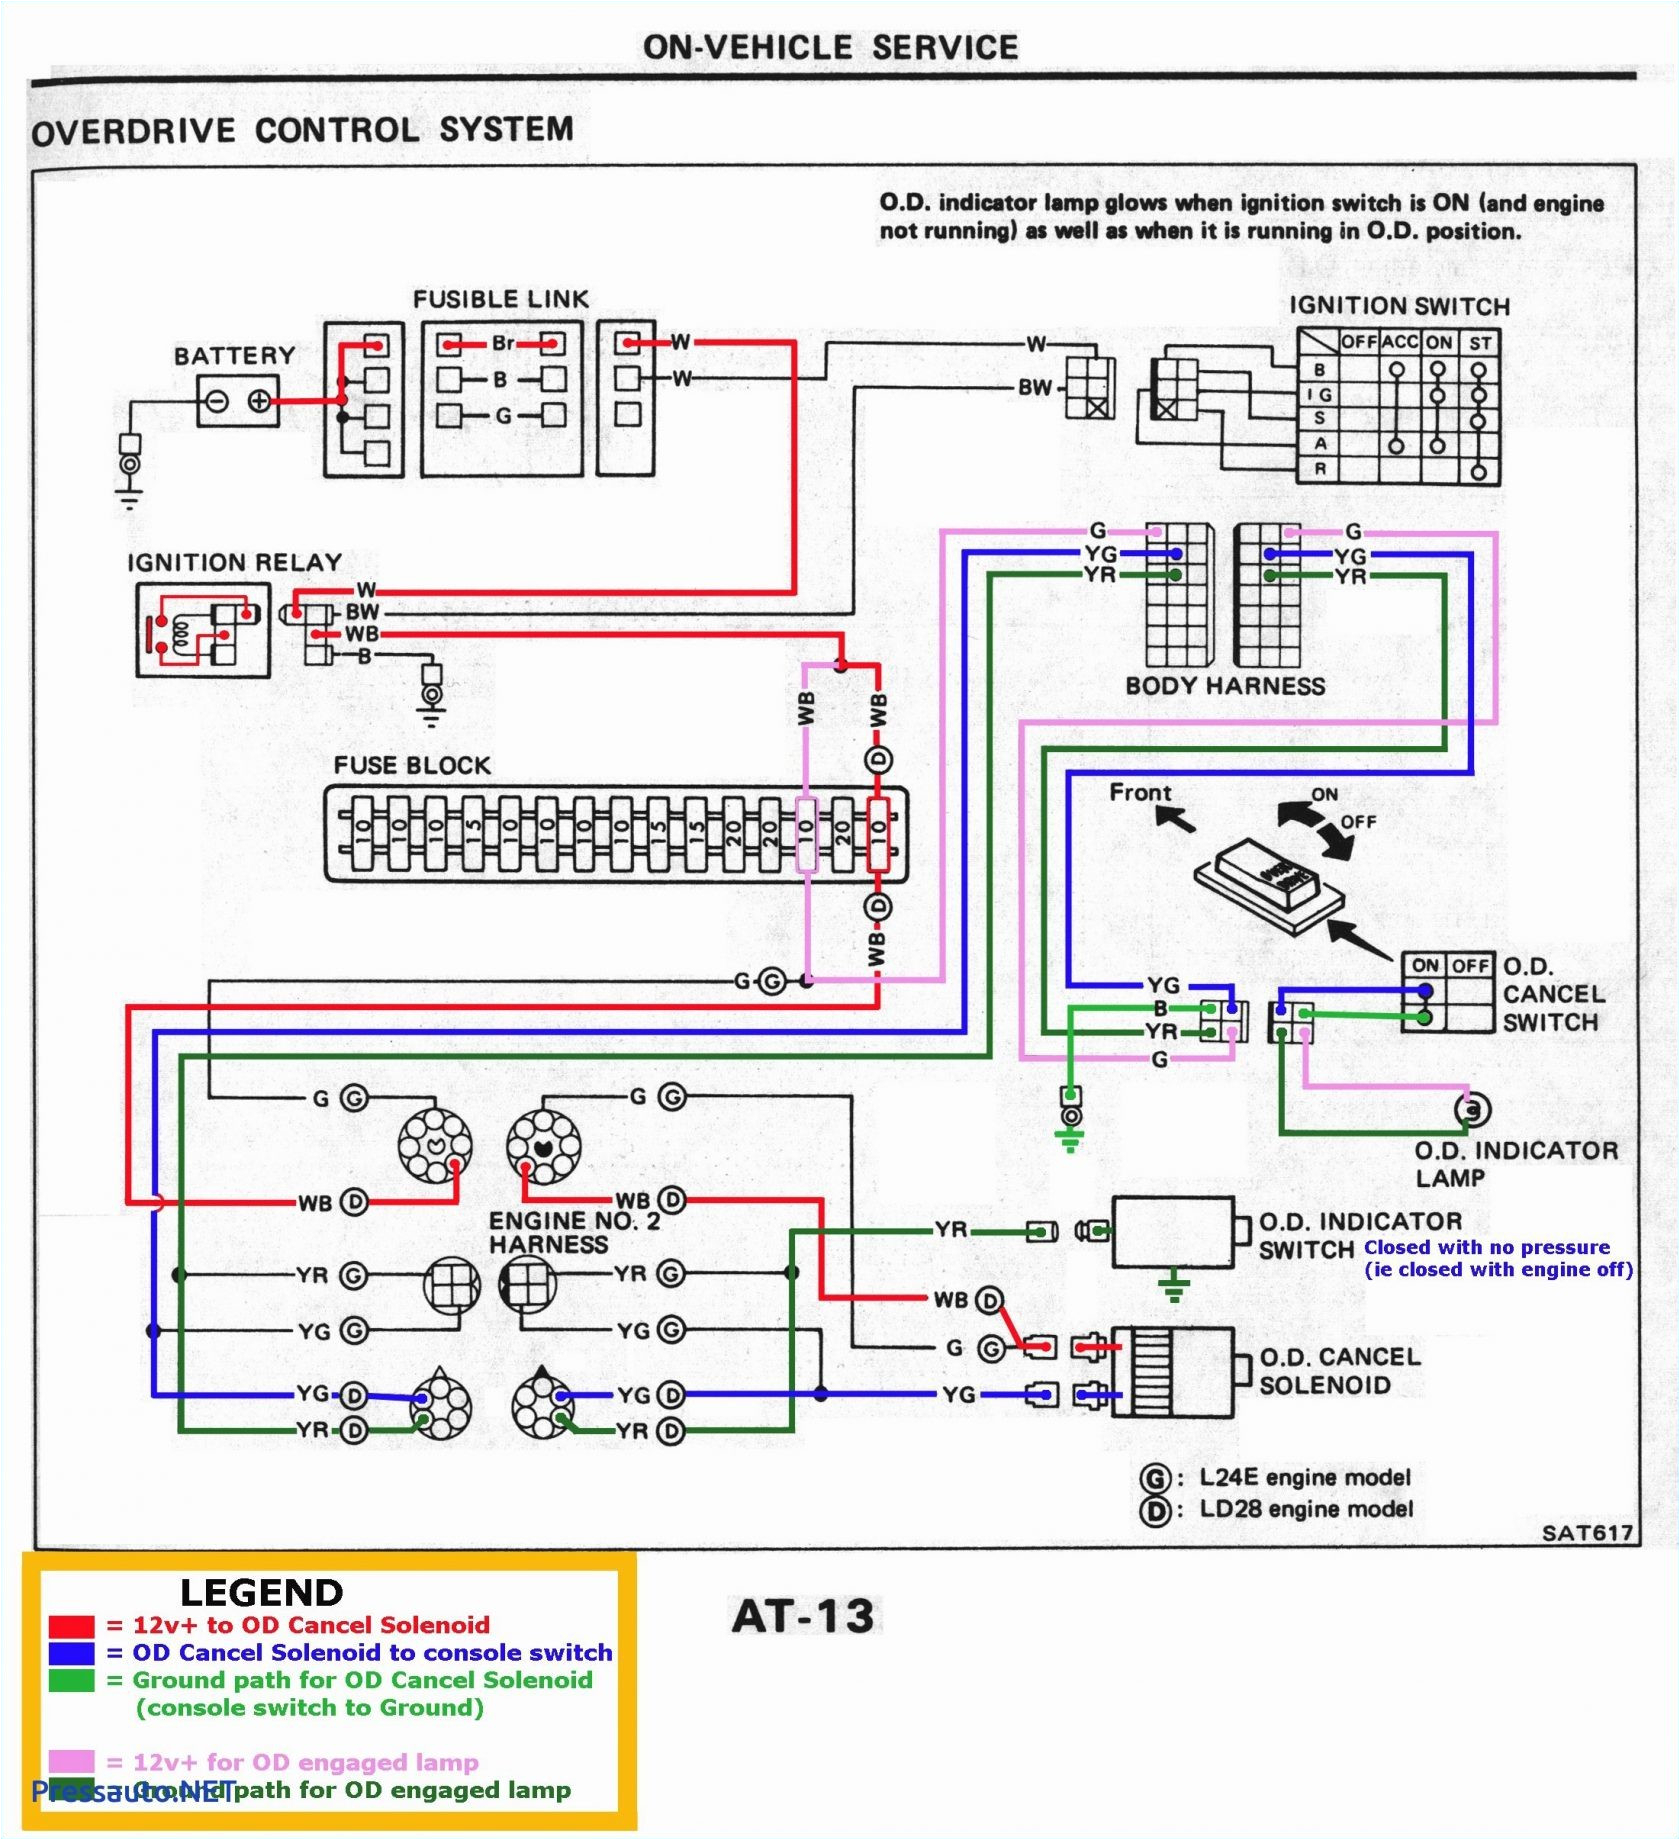 2011 Buick Regal Radio Wiring Diagram 98 S10 Tail Light Wiring Diagram Lan1 Fuse12 Klictravel Nl